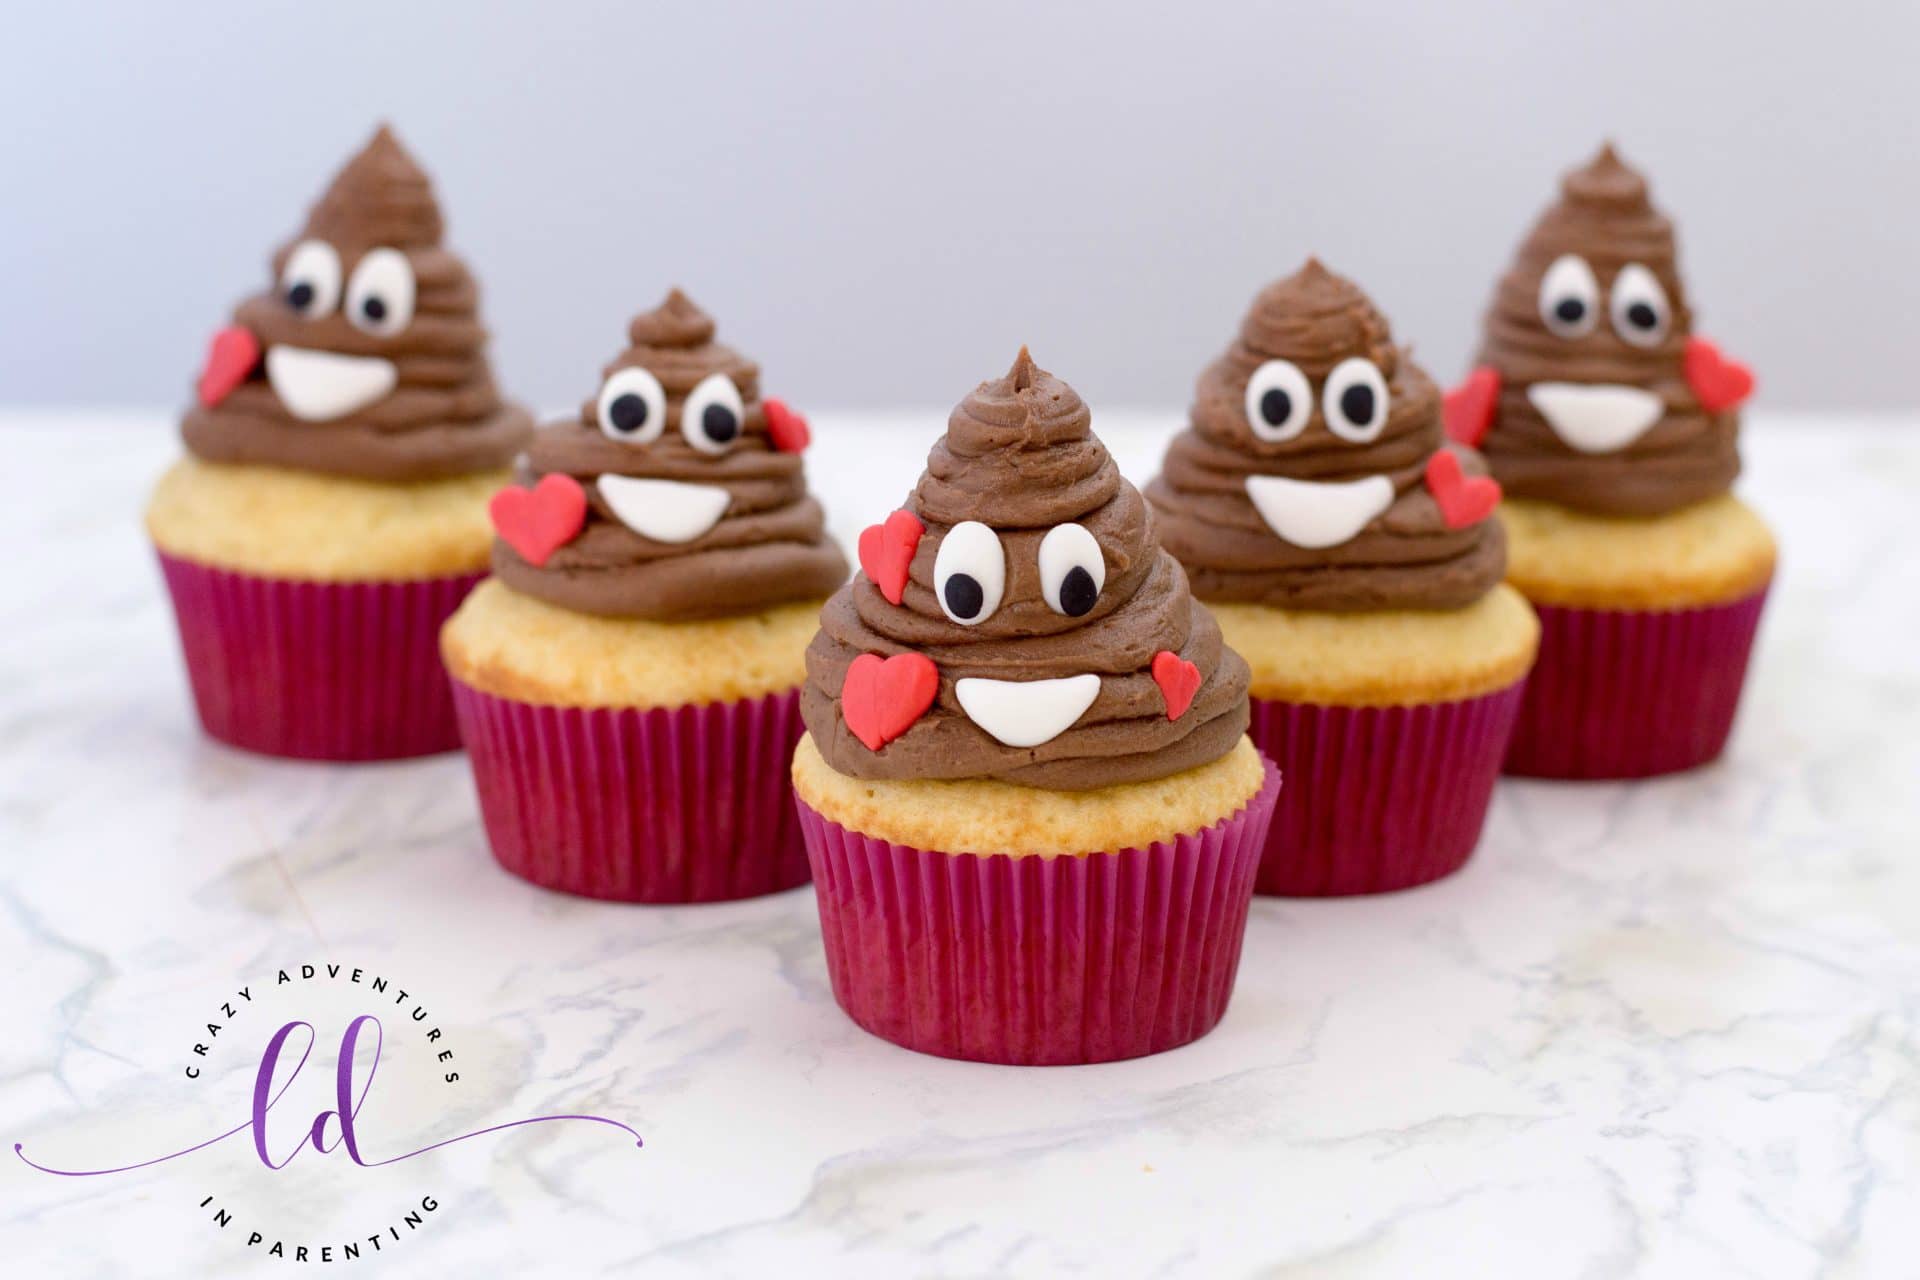 Poop Emoji Cupcakes with Nutella Filling